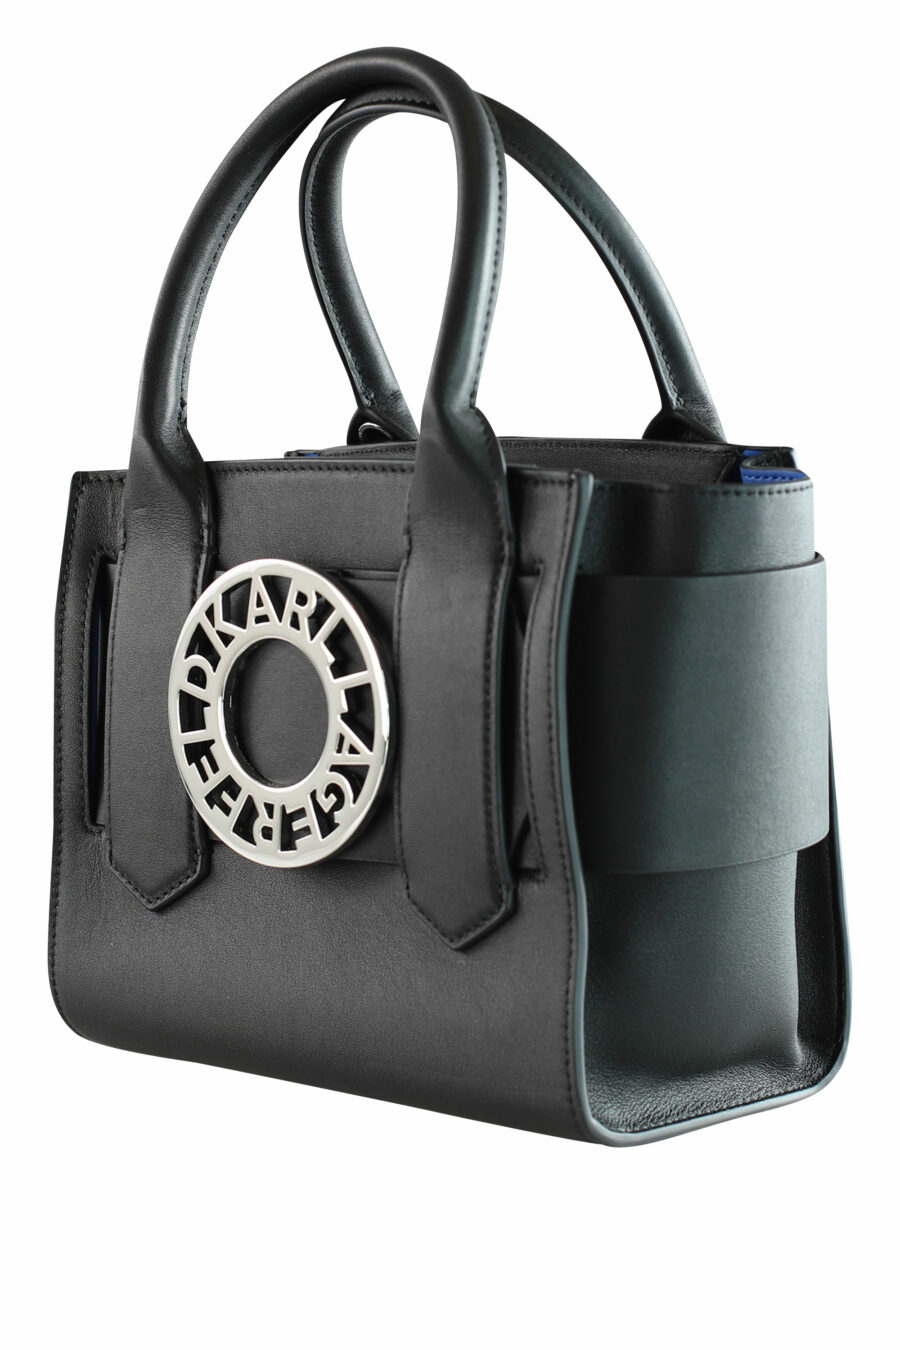 Tote bag mini black with "k/disk" logo - 8720744103363 2